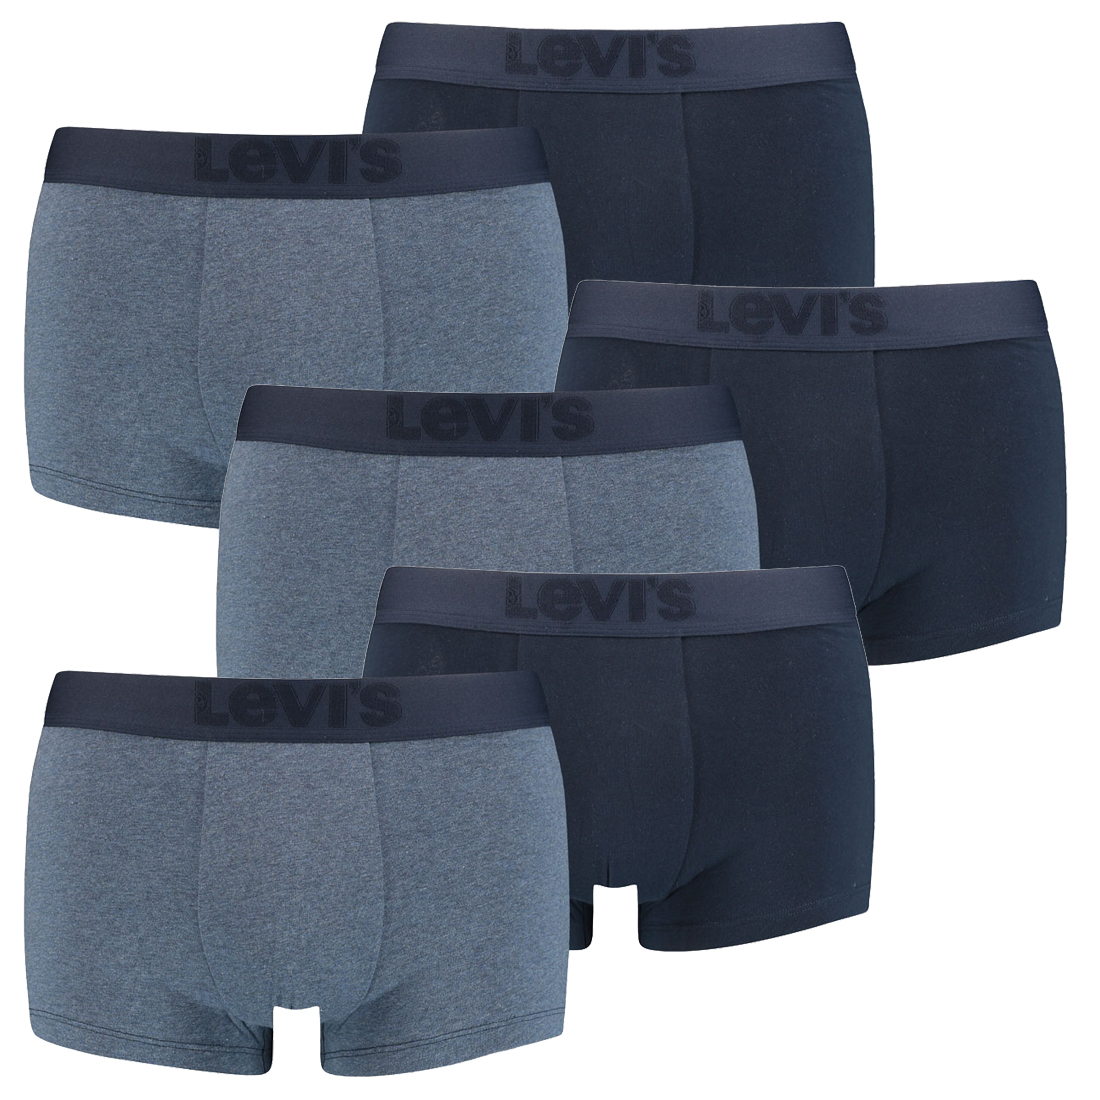 6er Pack Levis Herren Premium Trunk Boxer Shorts Unterhose Pant Unterwäsche